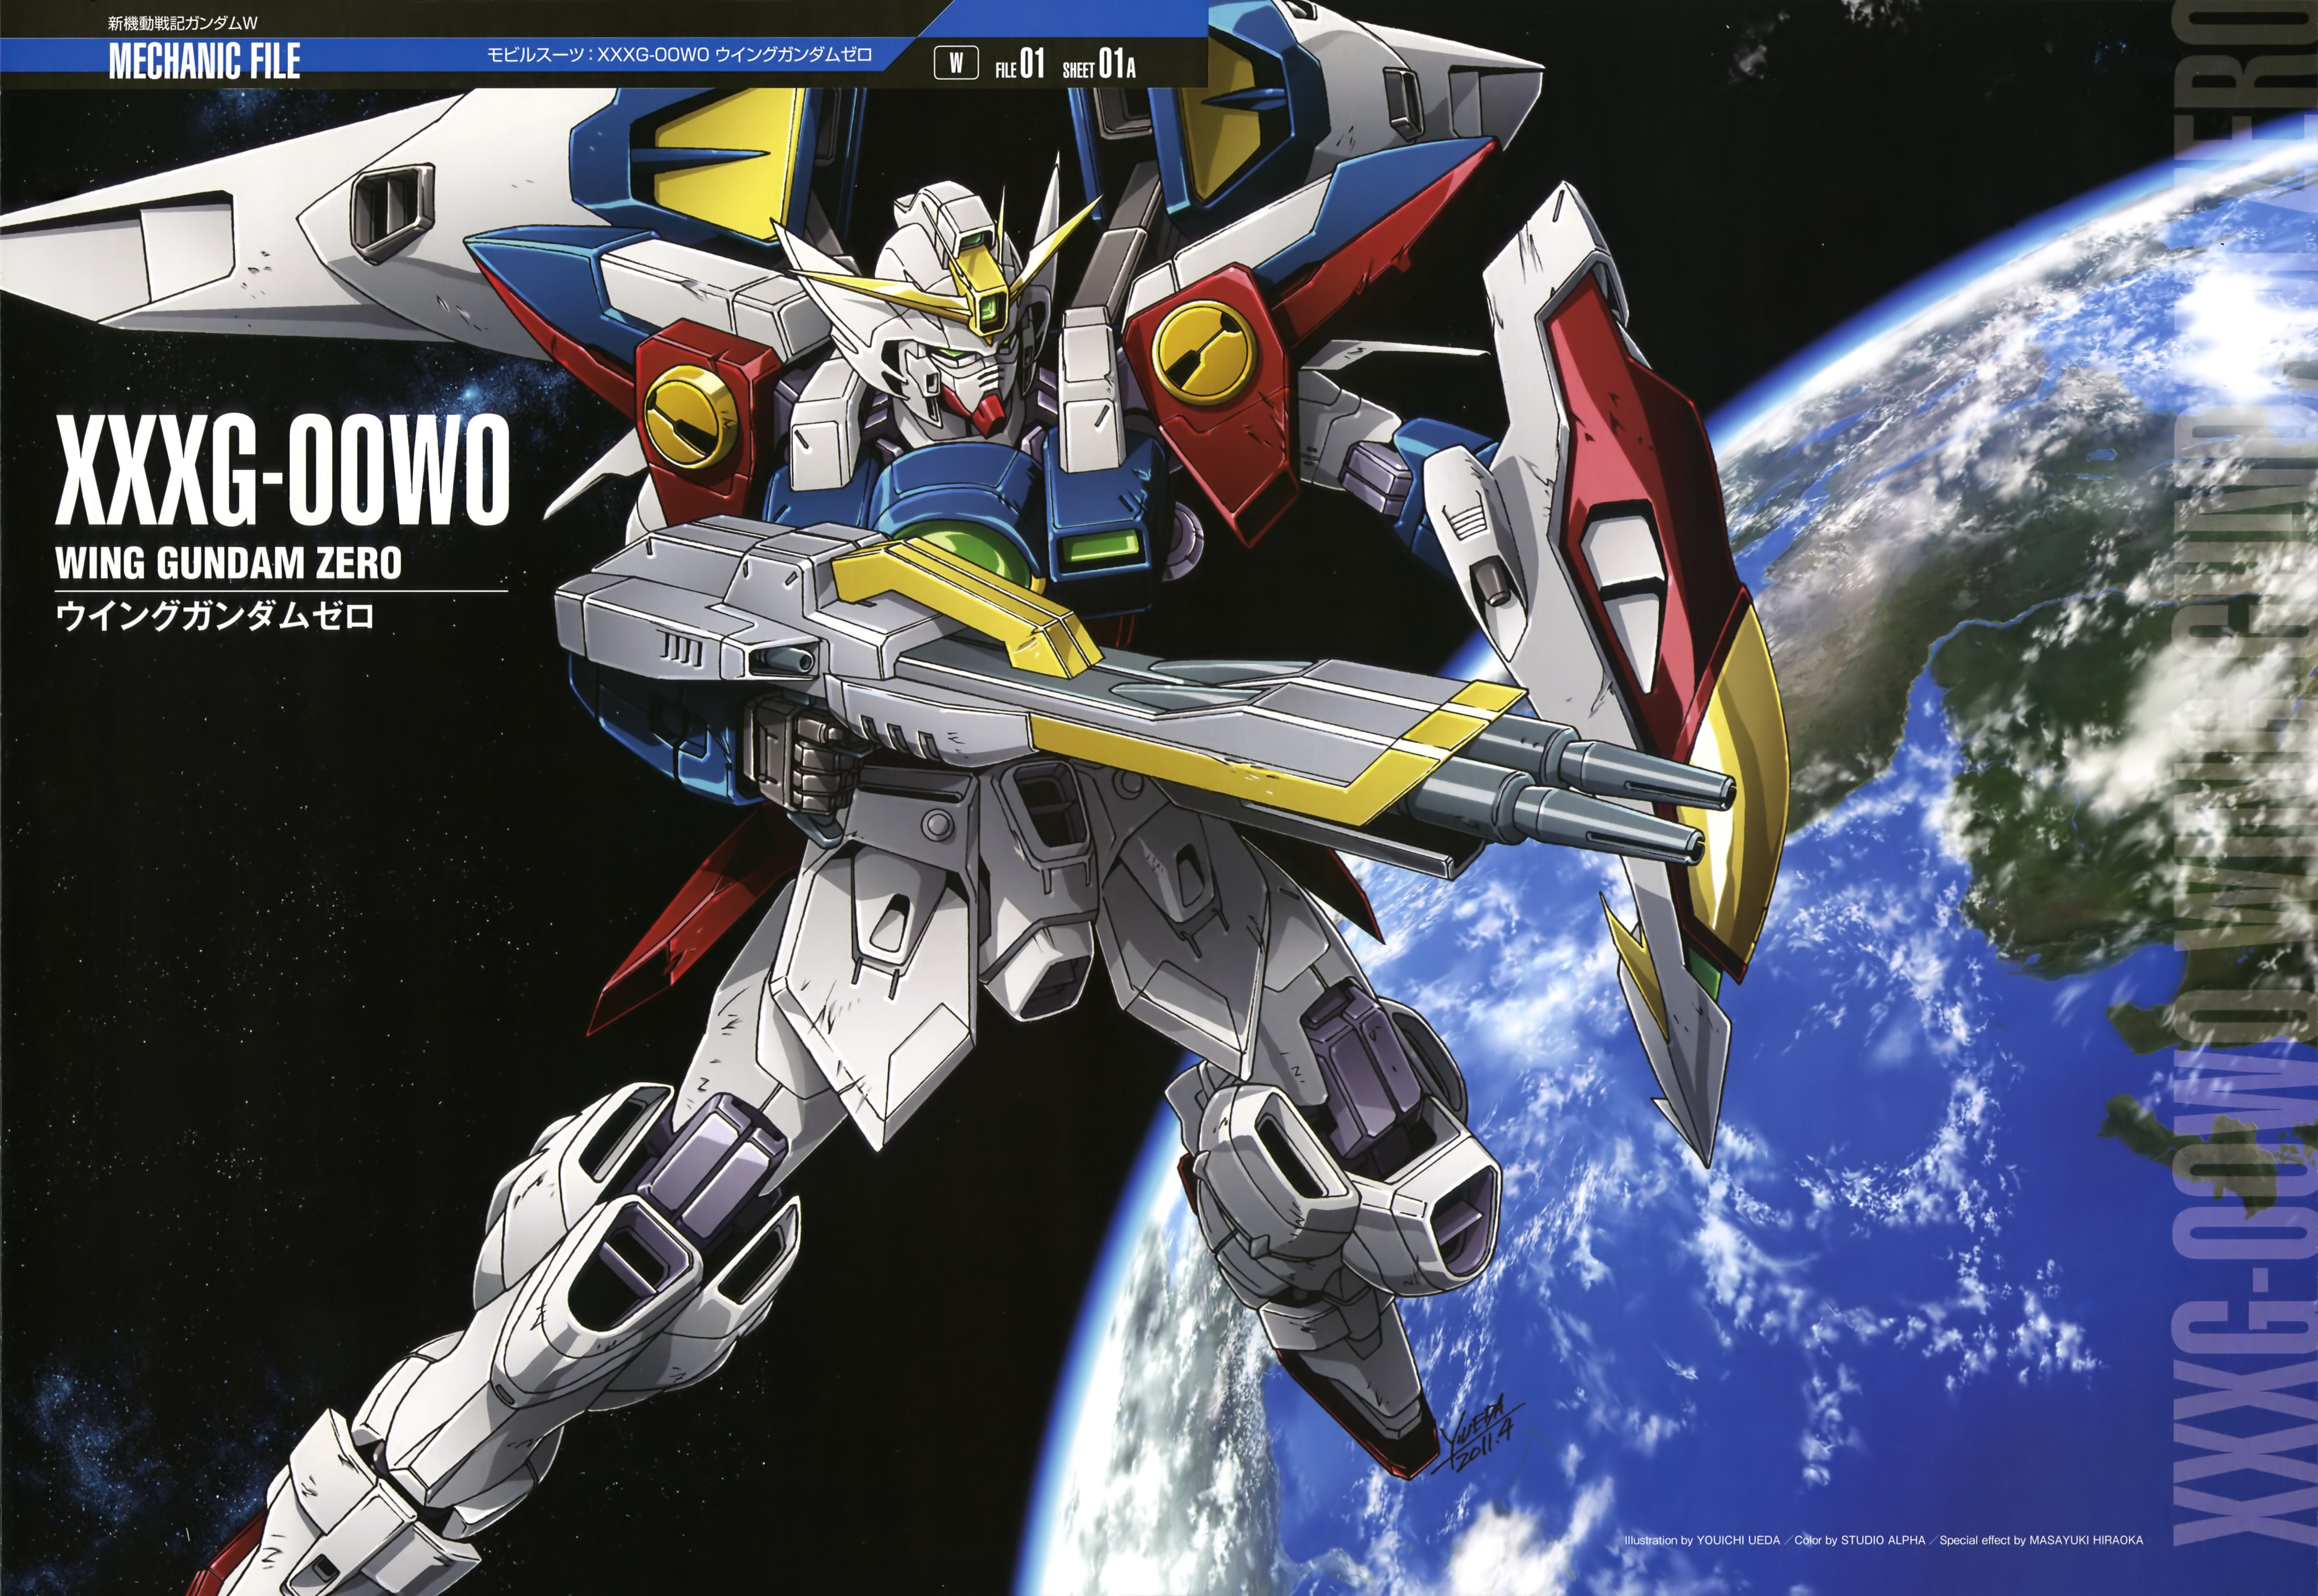 XXXG 00W0 Wing Gundam Zero - The Gundam Wiki - Wikia